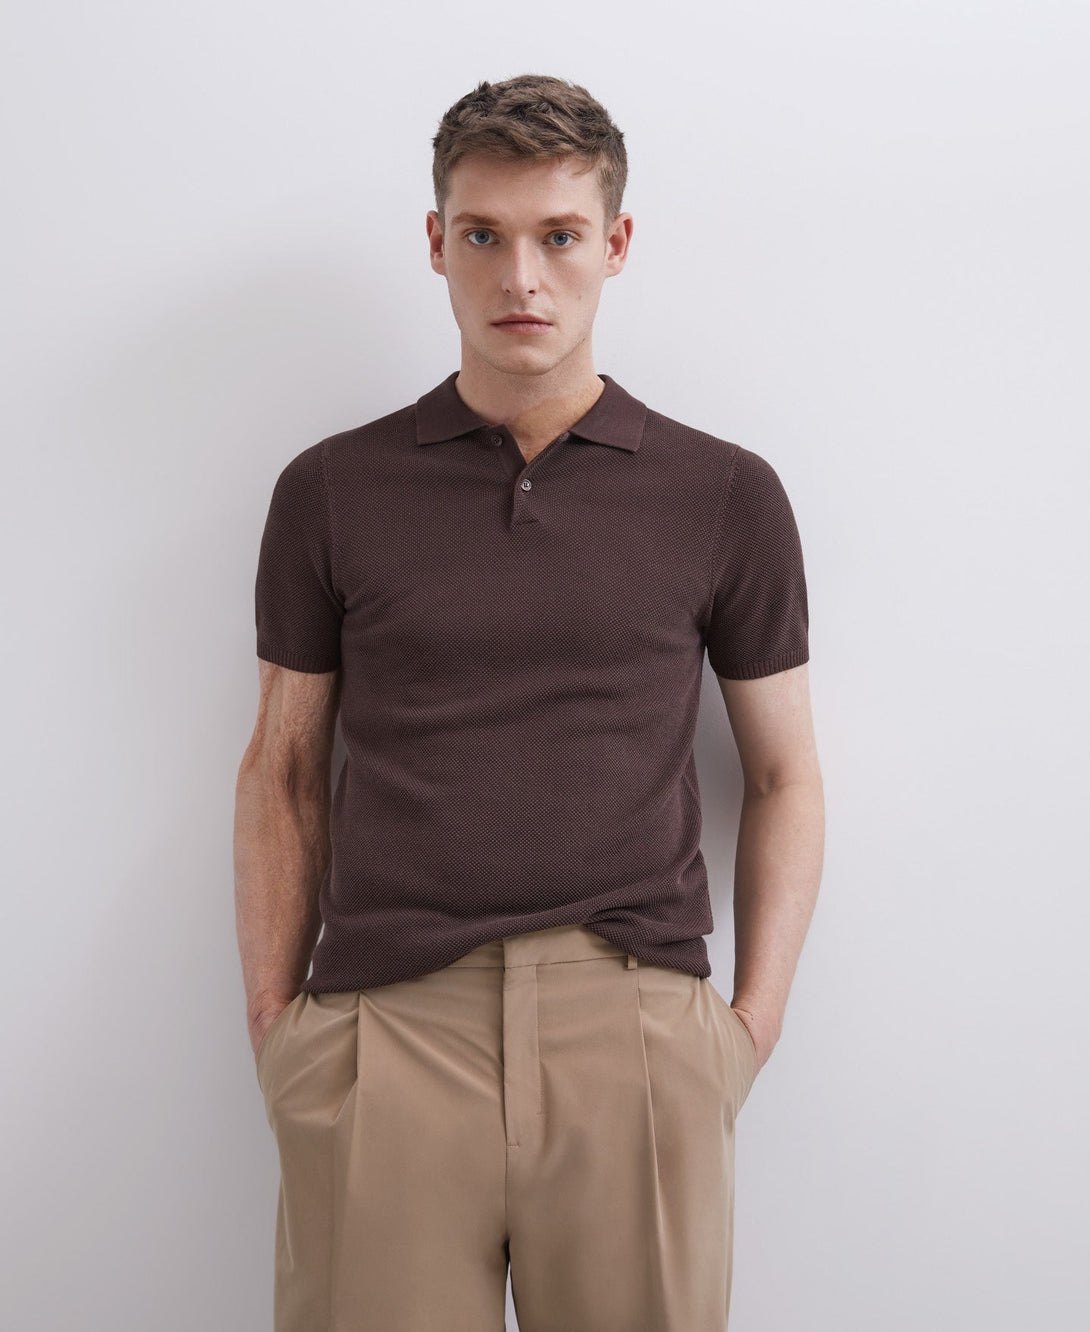 Men Polo | Brown Pique Shirt Collar Polo Shirt by Spanish designer Adolfo Dominguez